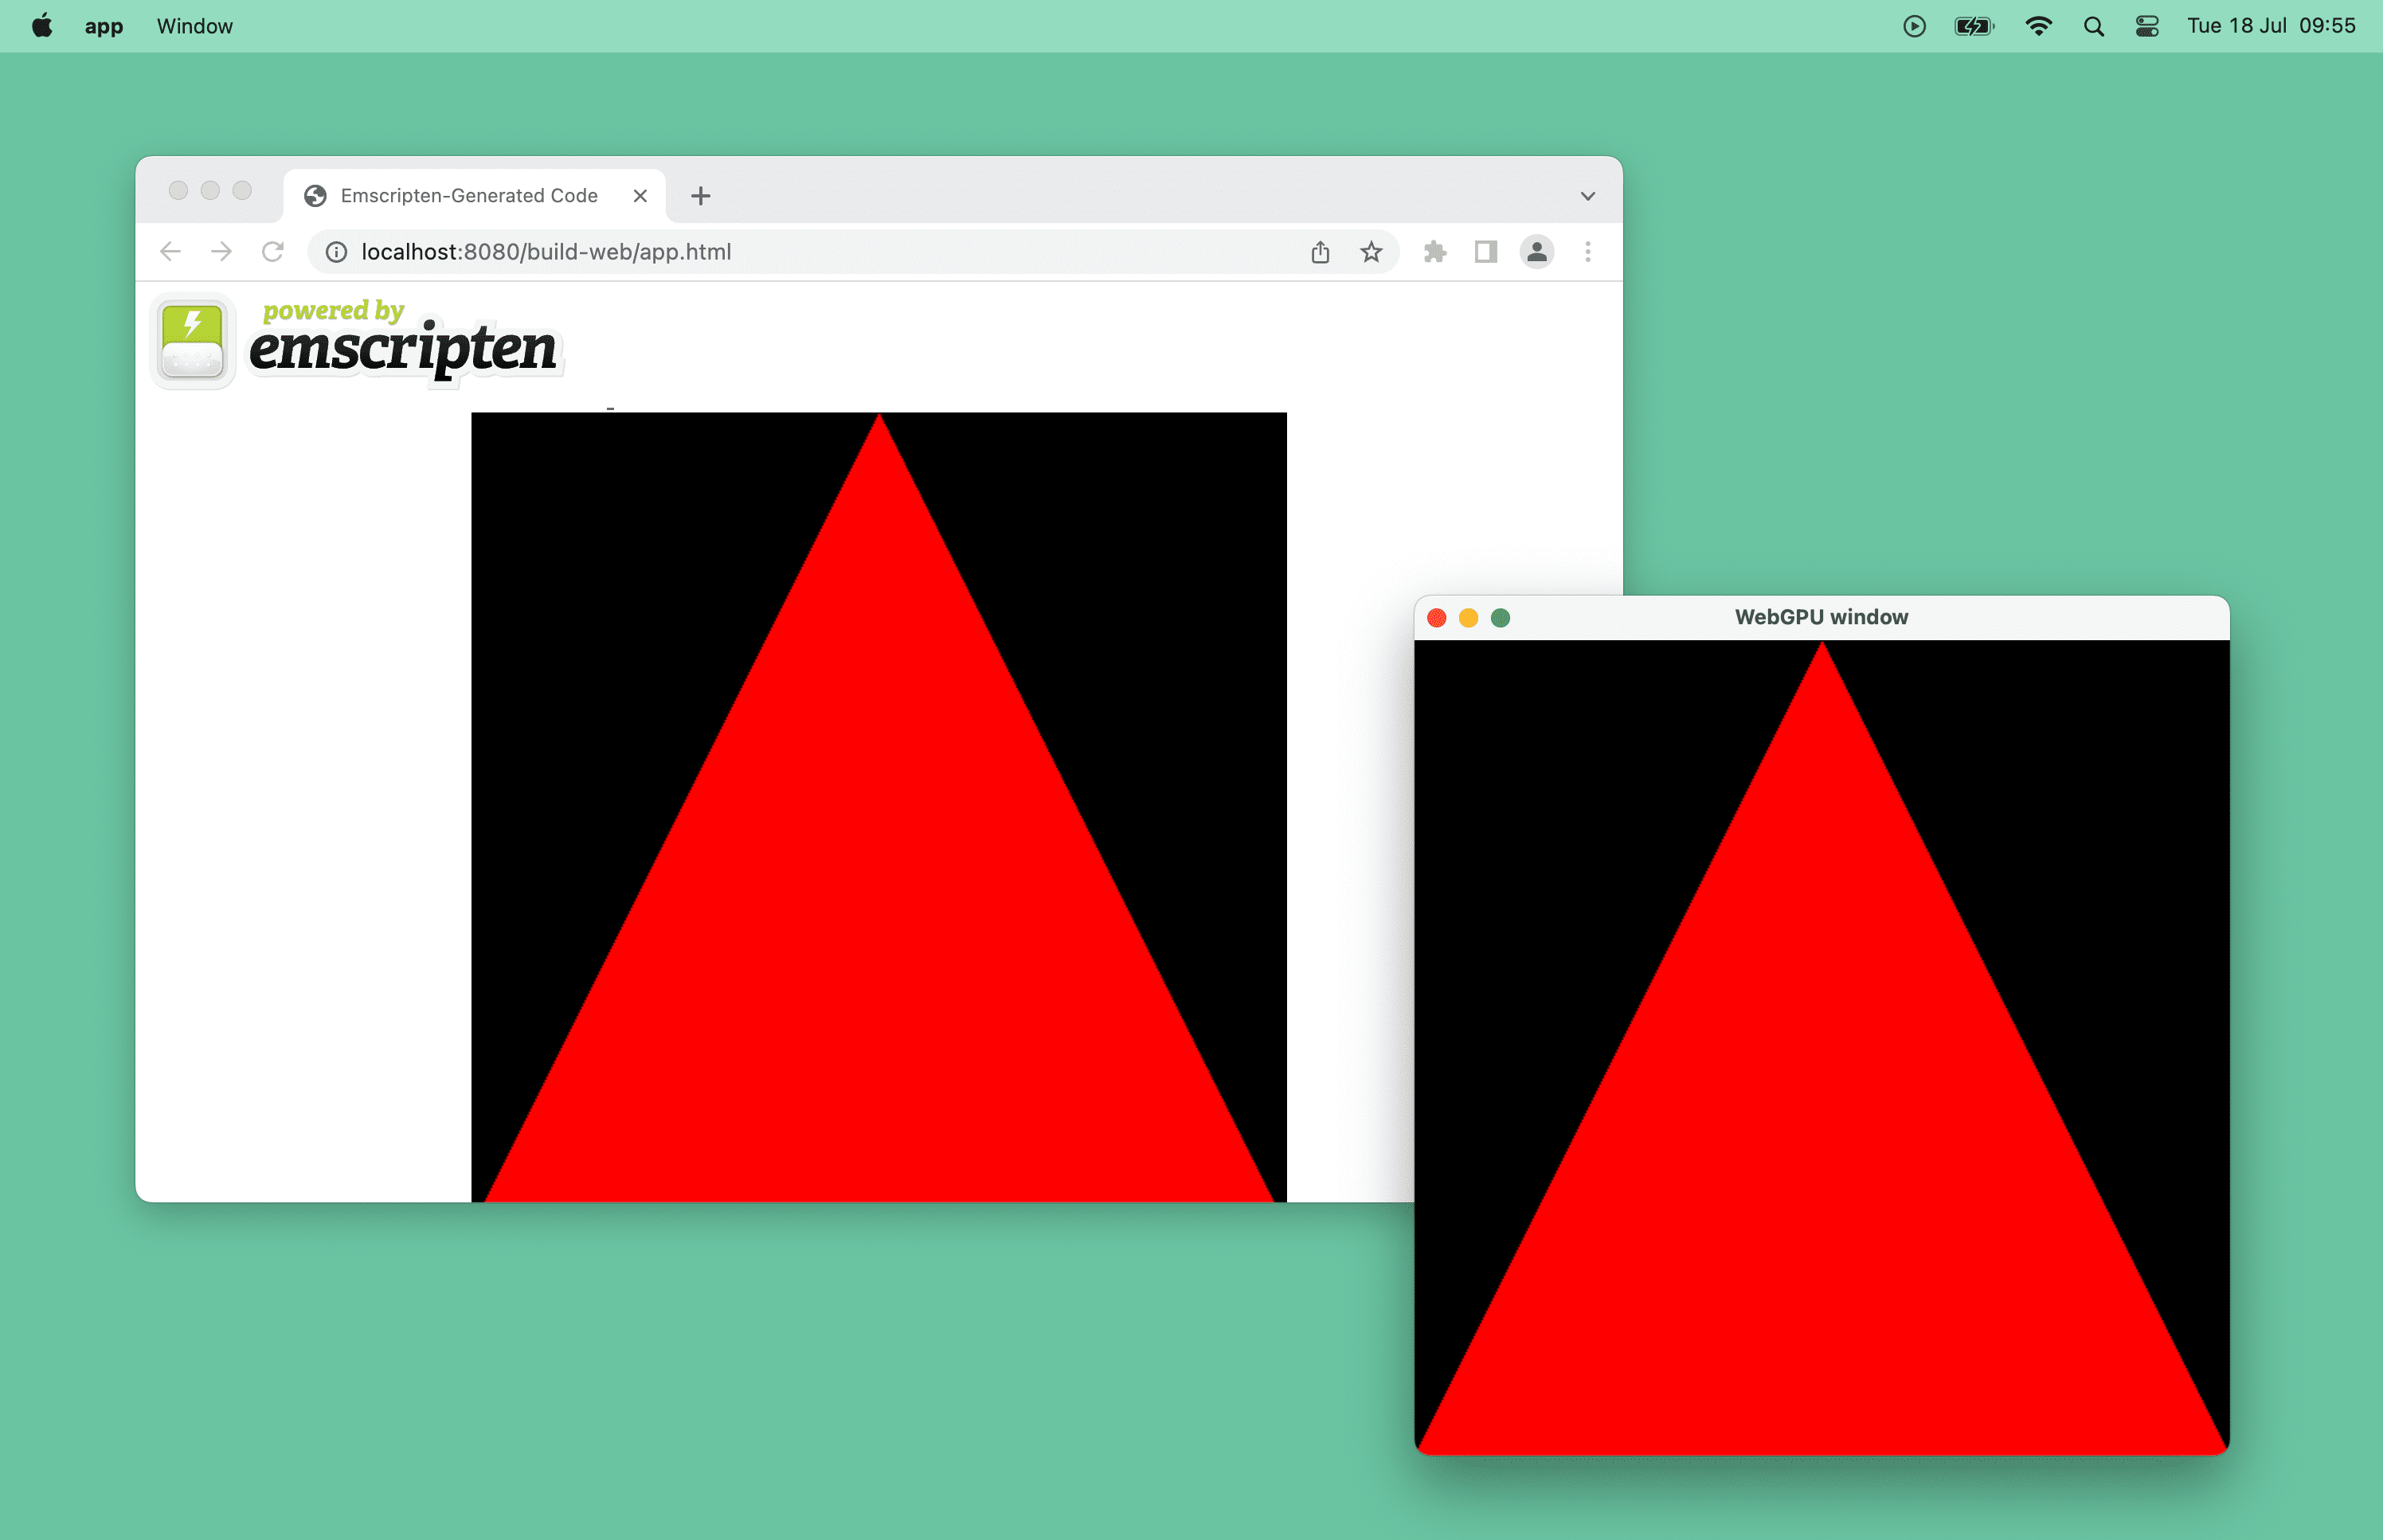 螢幕截圖顯示瀏覽器視窗採用 WebGPU 技術的紅色三角形，以及 macOS 上的桌面視窗。